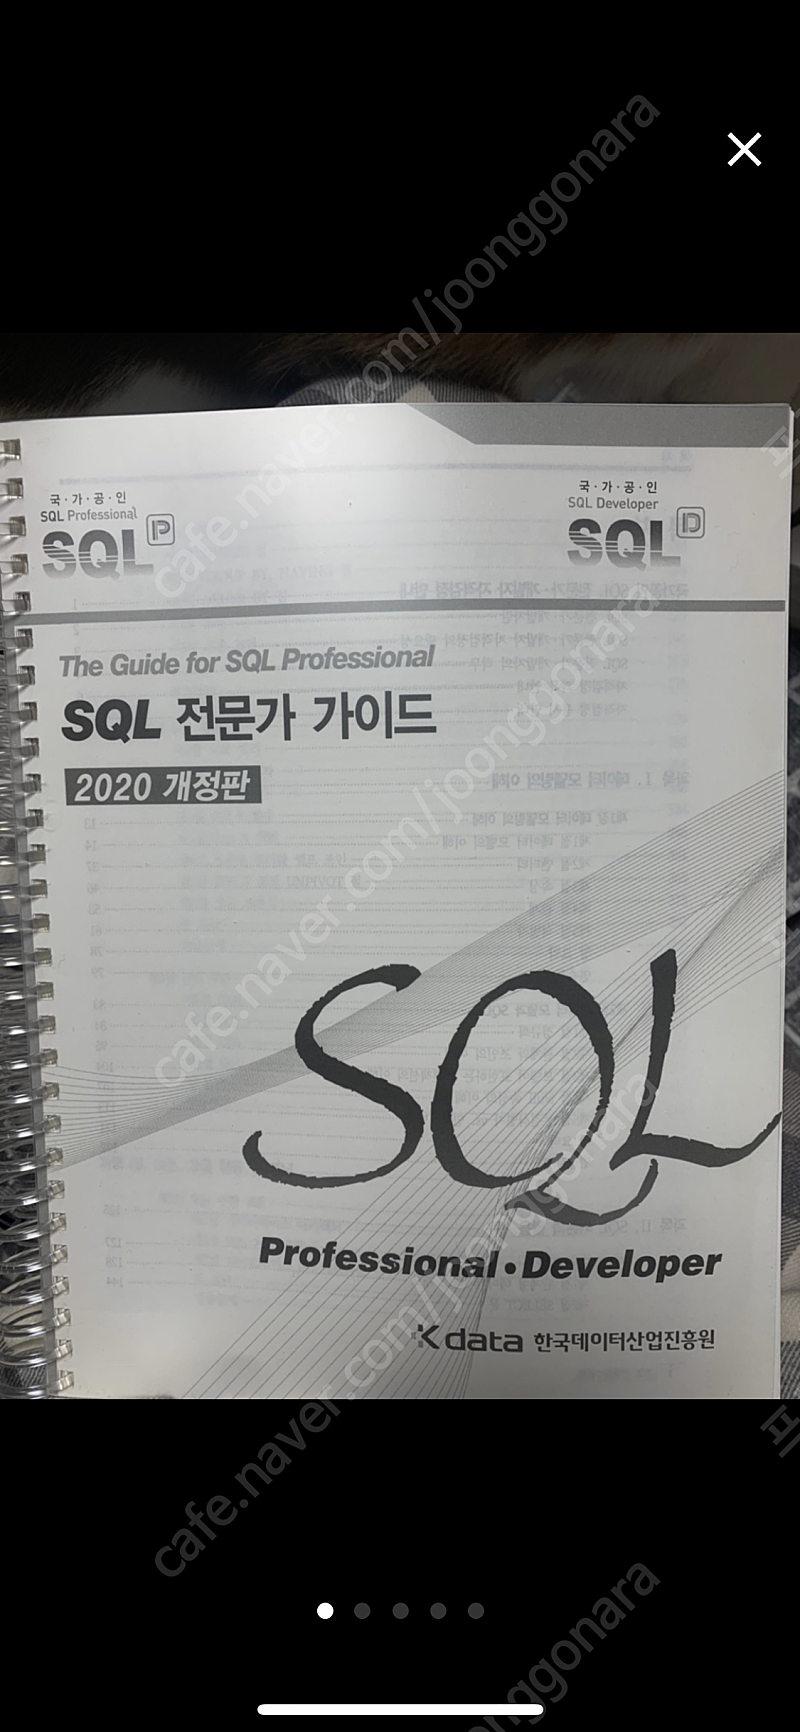 SQLP 책 팔아요(오라클성능/친절한SQL/SQL전문가가이드/두잇알고리즘 자바편)